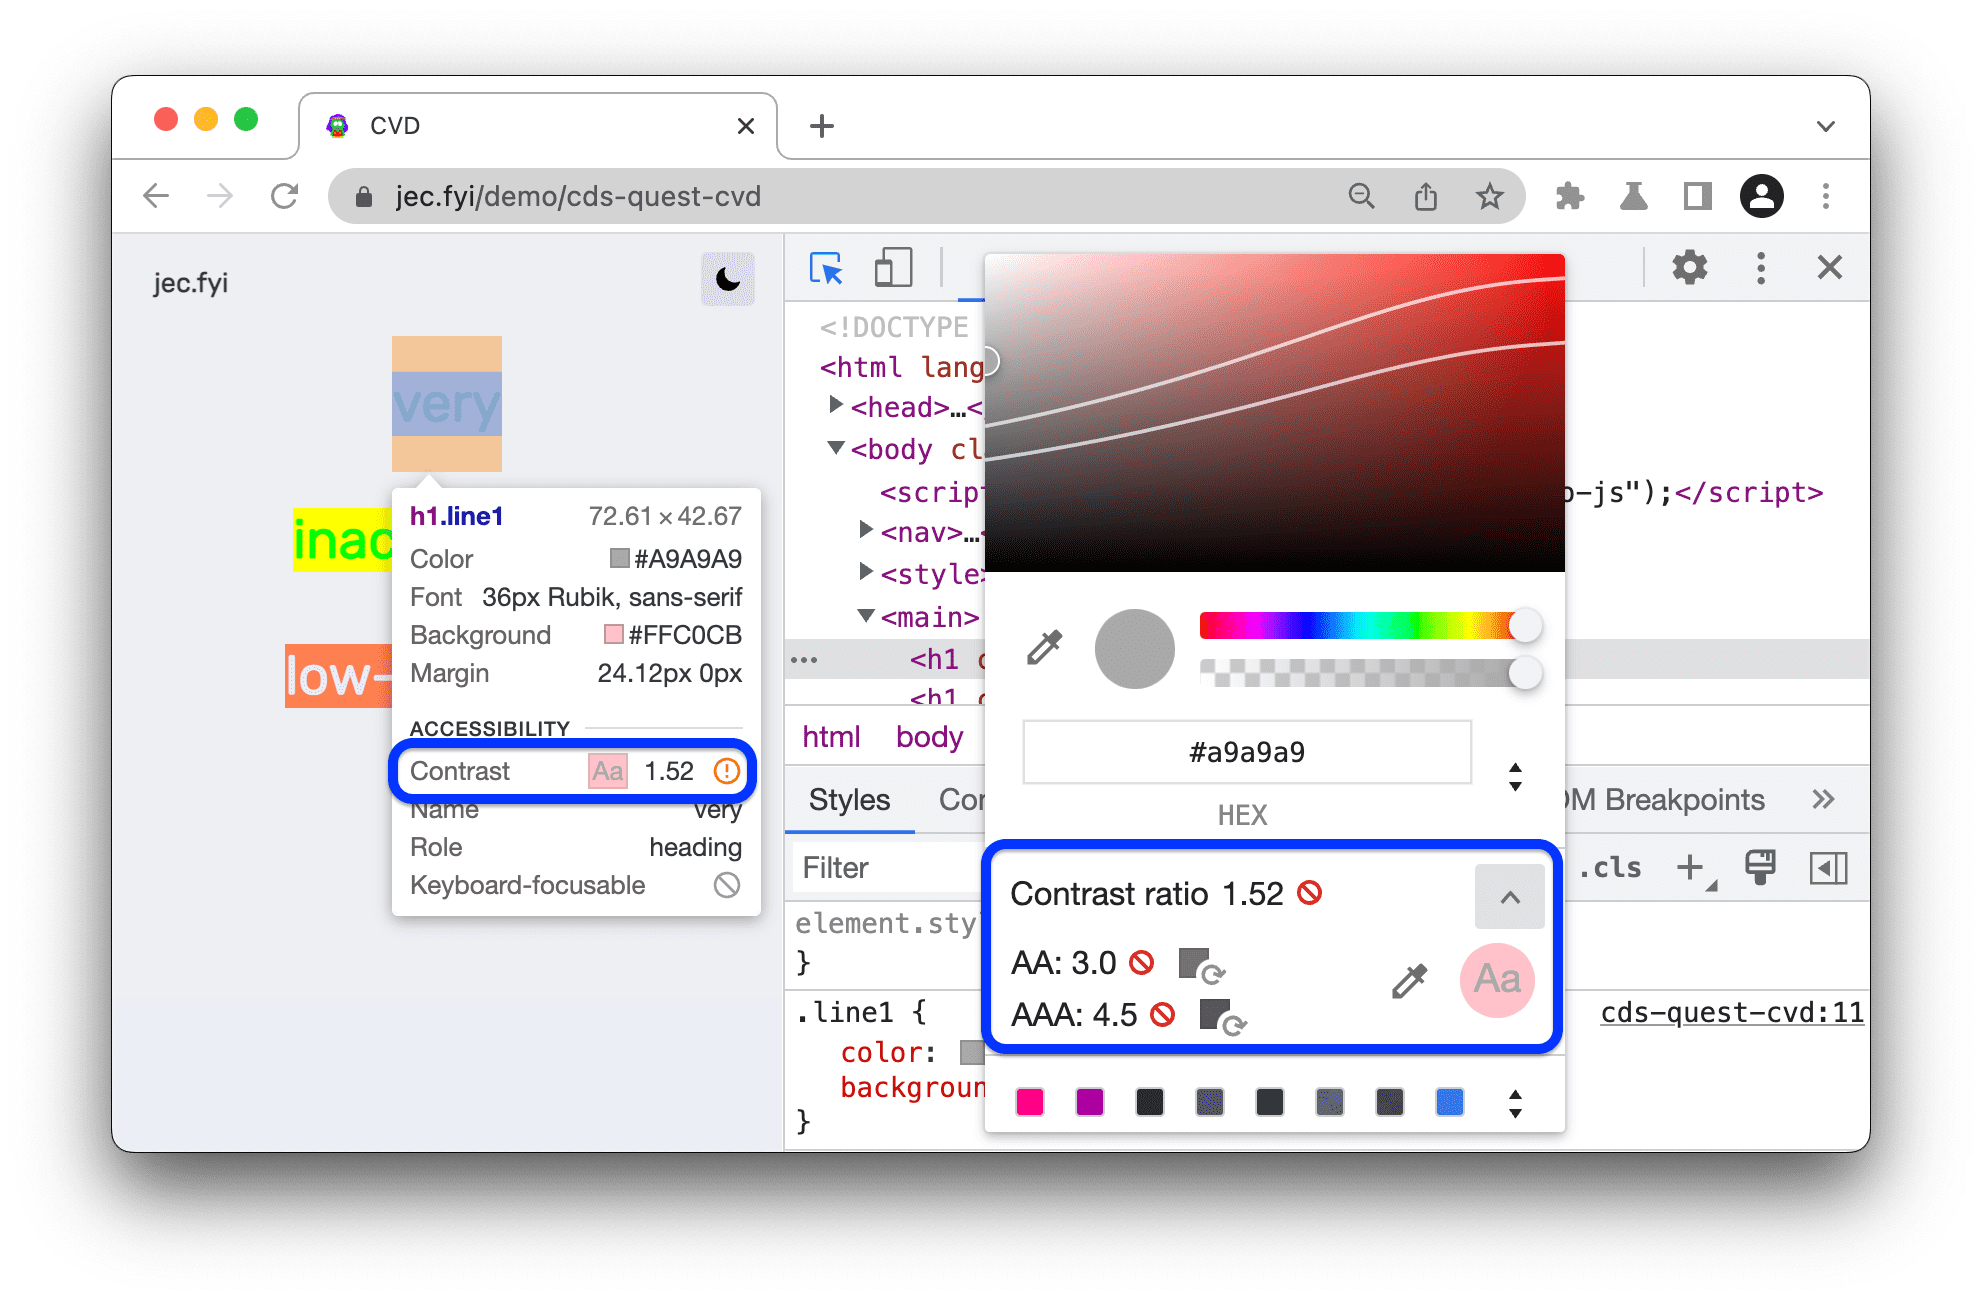 Tỷ lệ tương phản có trong chú giải công cụ, với Công cụ chọn màu để đo tỷ lệ các màu thay thế. Có phân loại AA và AAA.